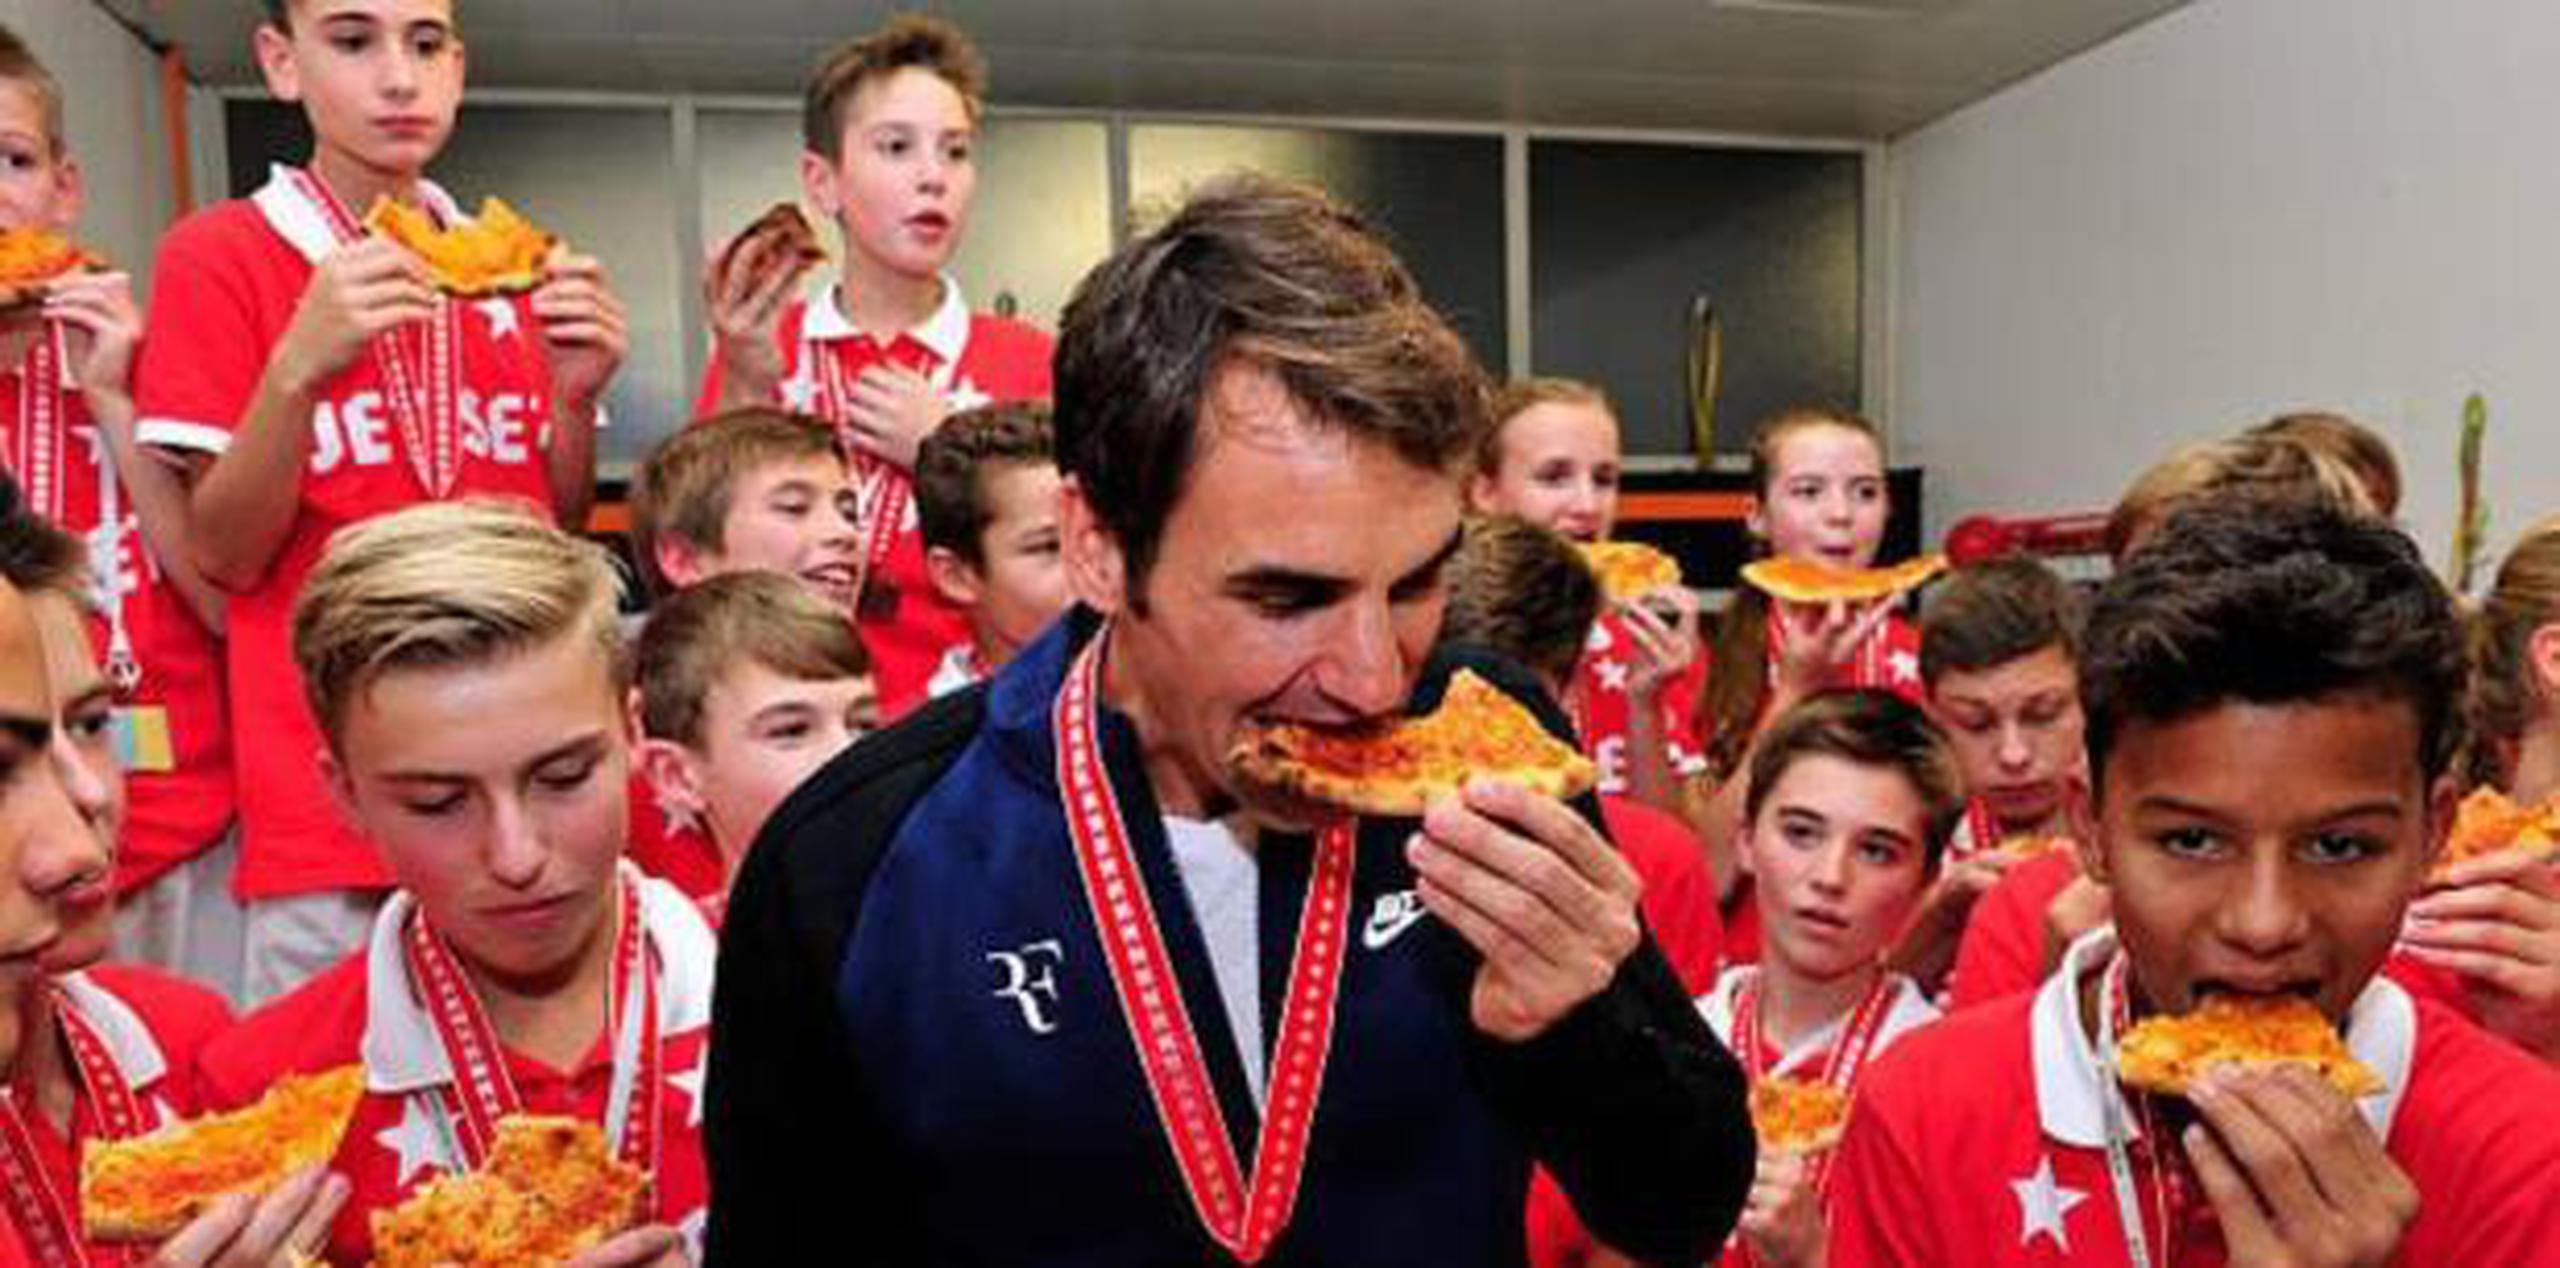 Federer, tercero en el escalafón mundial y con 101 títulos en su récord, "no cuida una barbaridad su alimentación ni sus rutinas de descanso", según un columnista. (La Nacion)